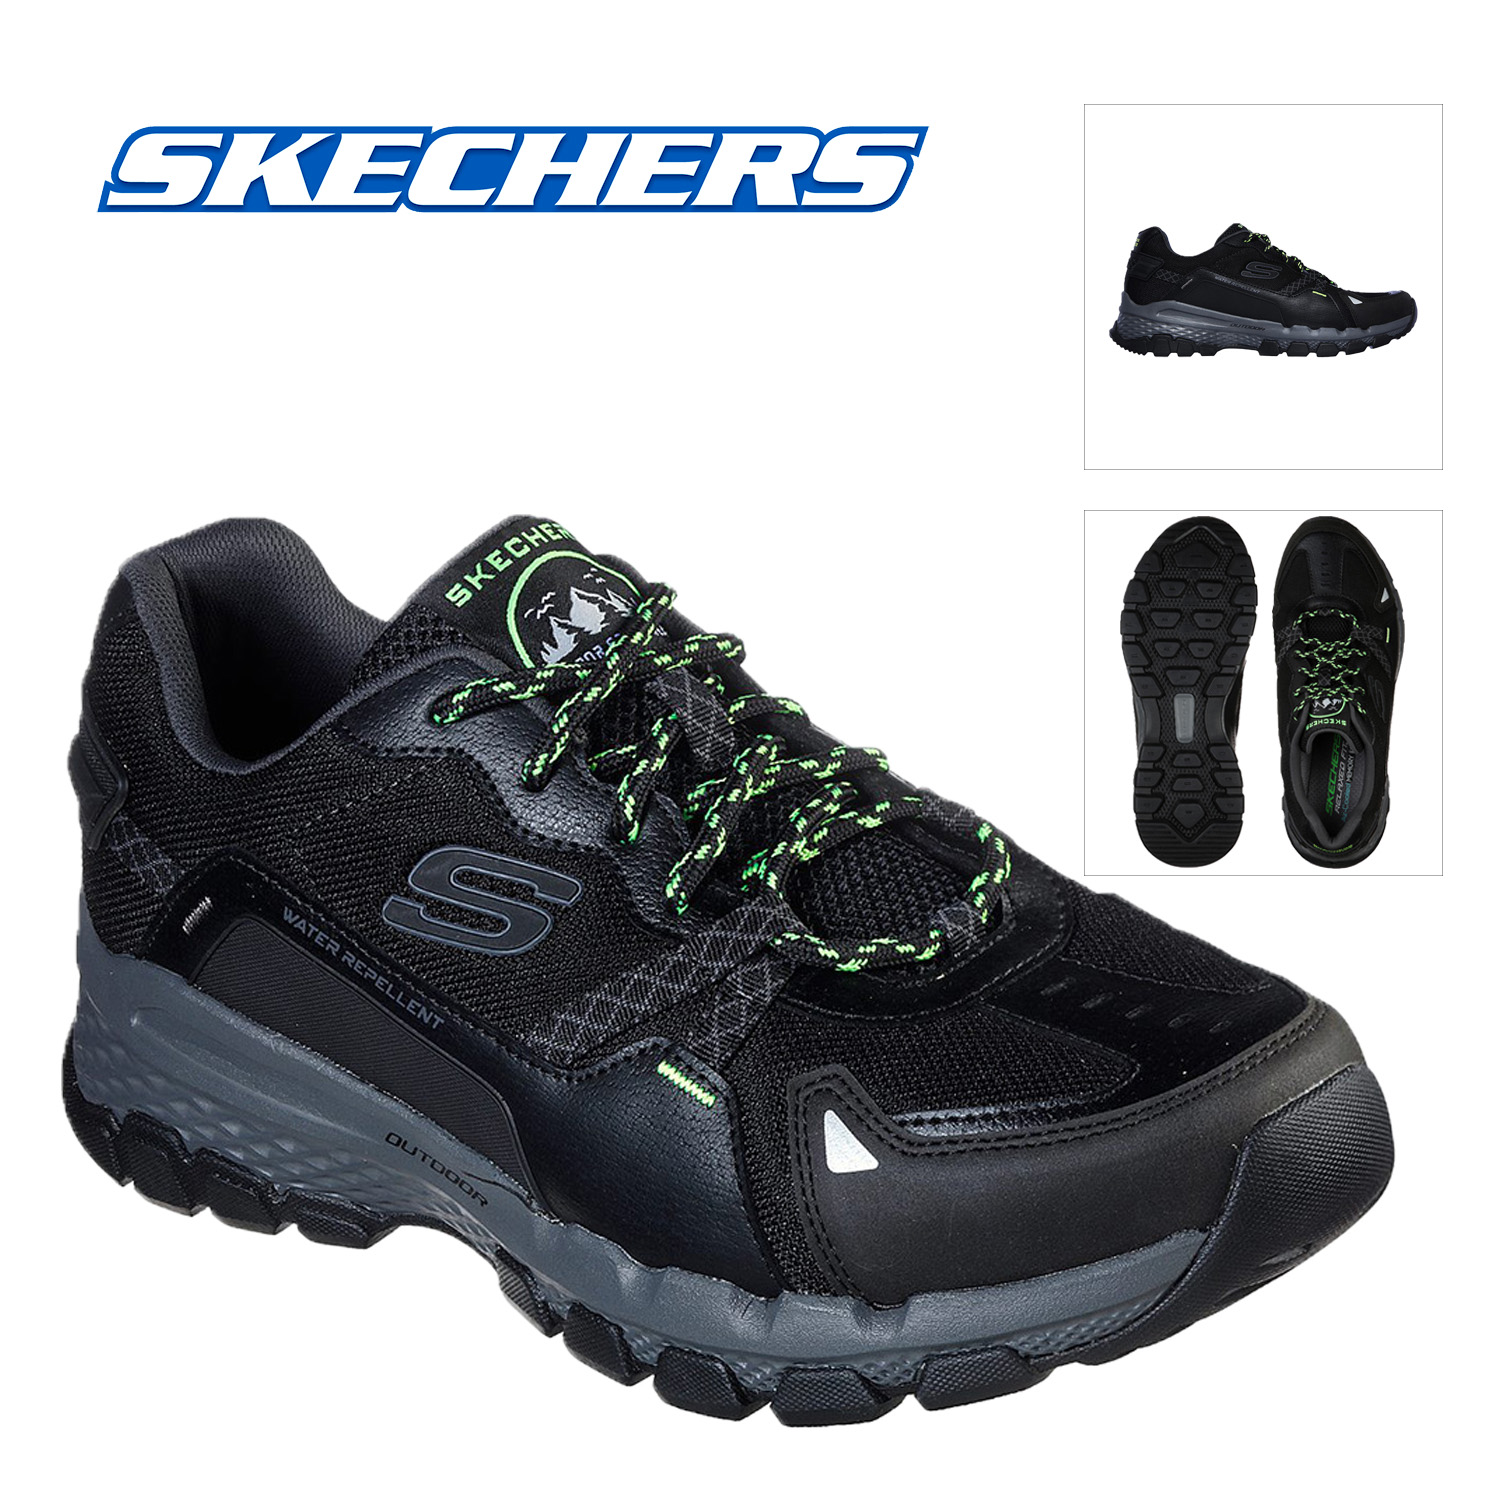 skechers waterproof sneakers